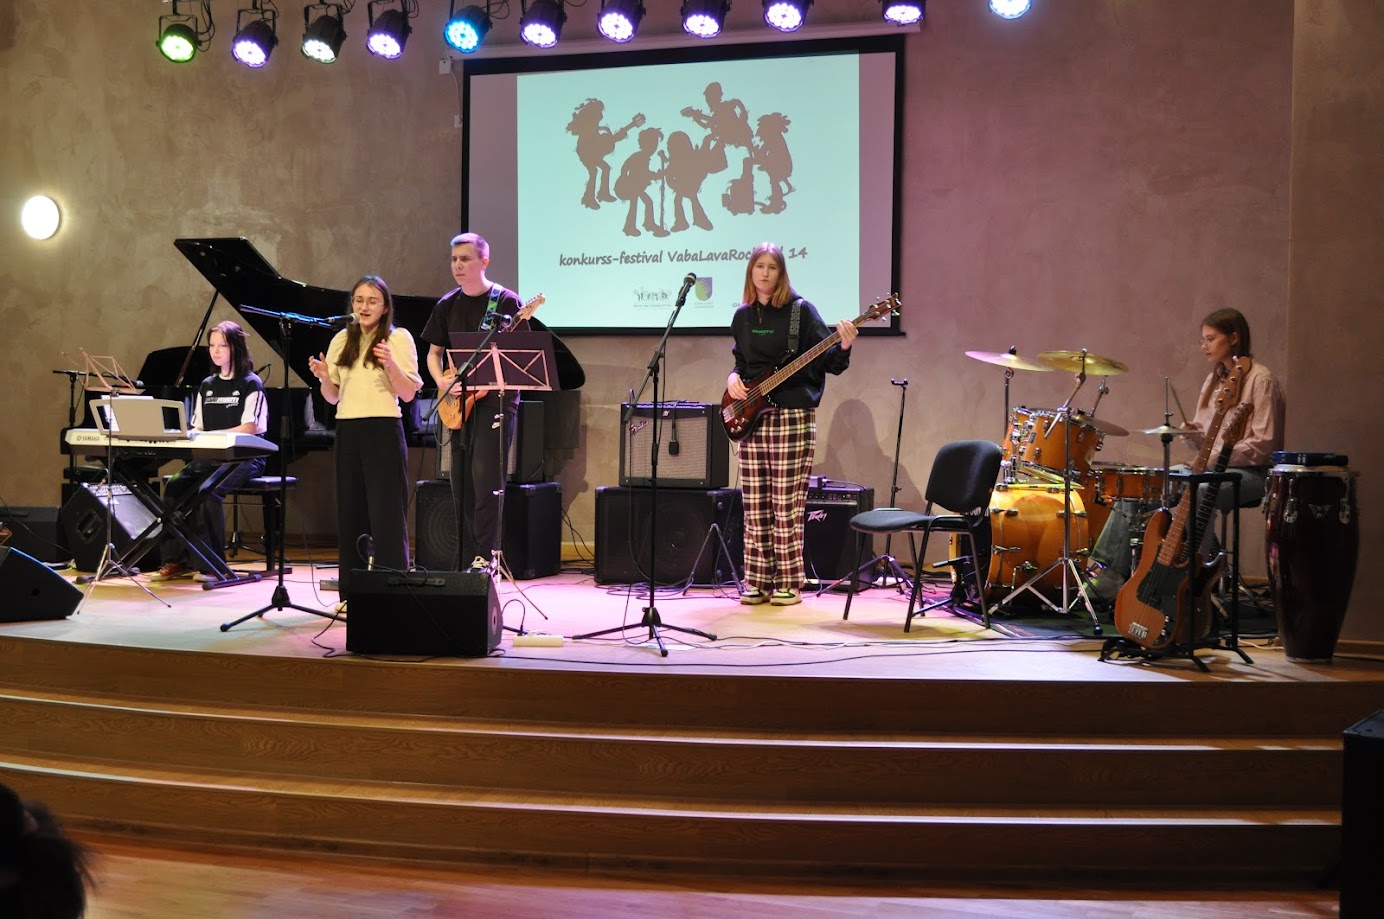 18.04.24 toimus Kohtla-Järve Kunstide koolis regoinaalne konkurss-festival VabaLavaRock, kus osalesid peale 11 ansambli ka meie kooli estraadiosakonna õpilased.